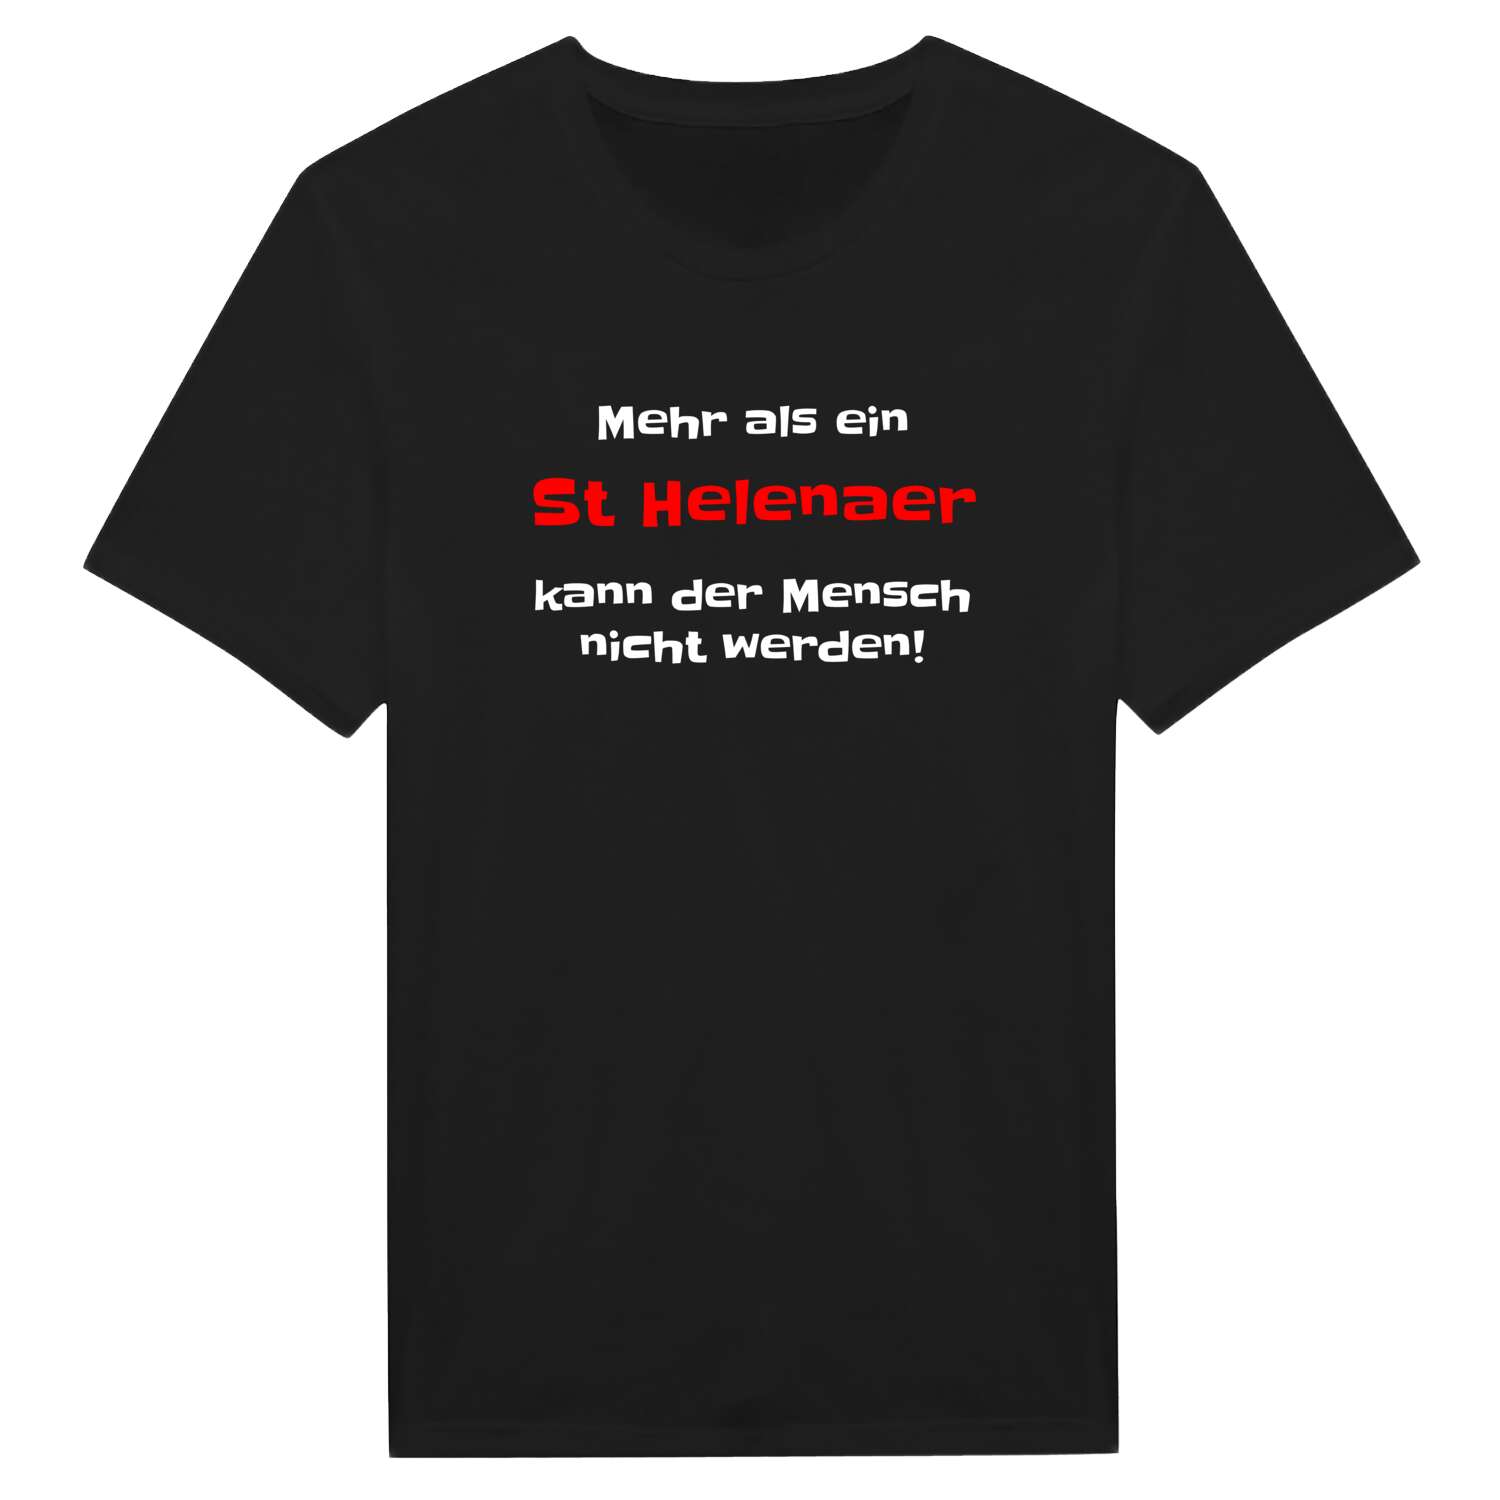 St Helena T-Shirt »Mehr als ein«